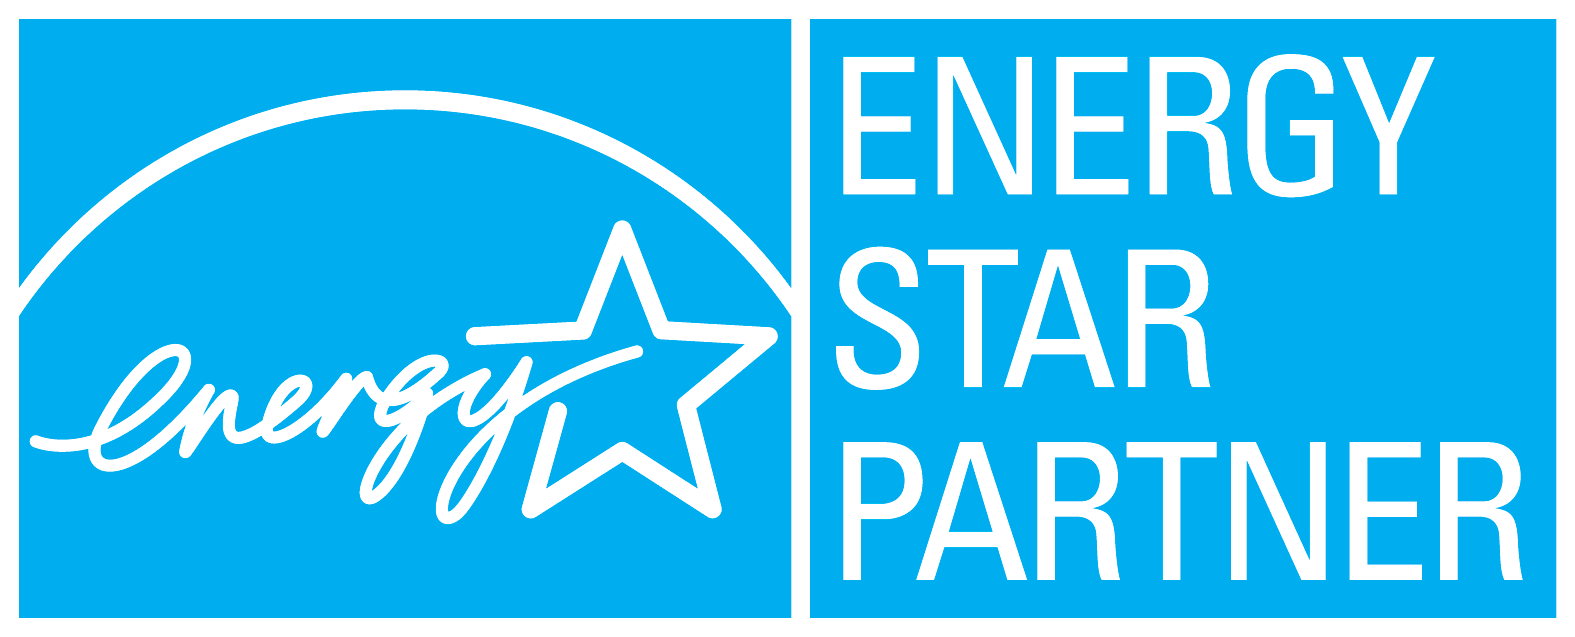 Energy Star Partner Horizontal